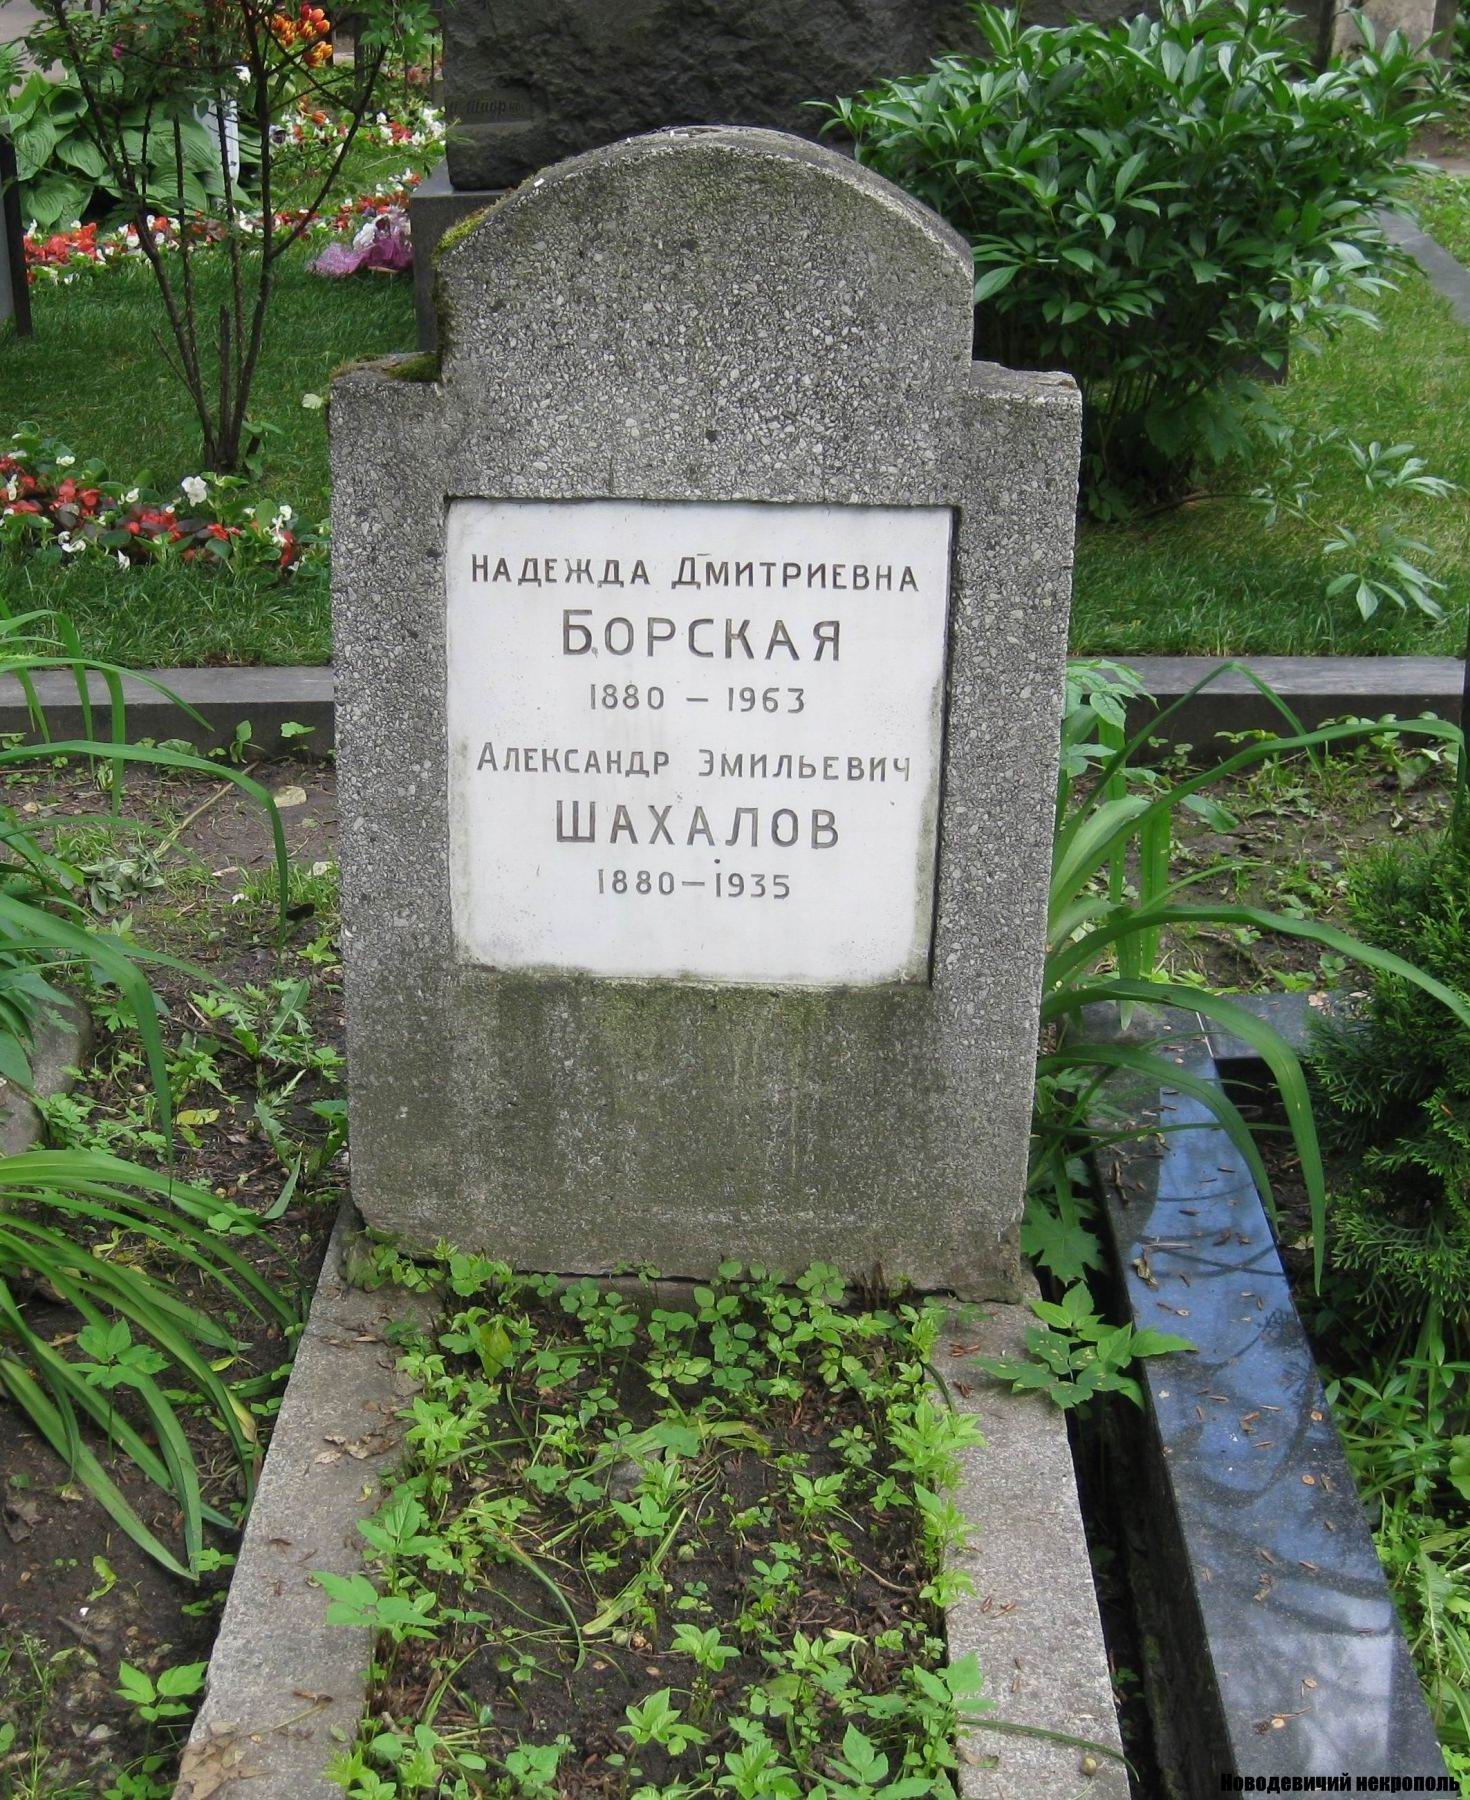 Памятник на могиле Борской Н.Д. (1880-1963), на Новодевичьем кладбище (2-21-2).